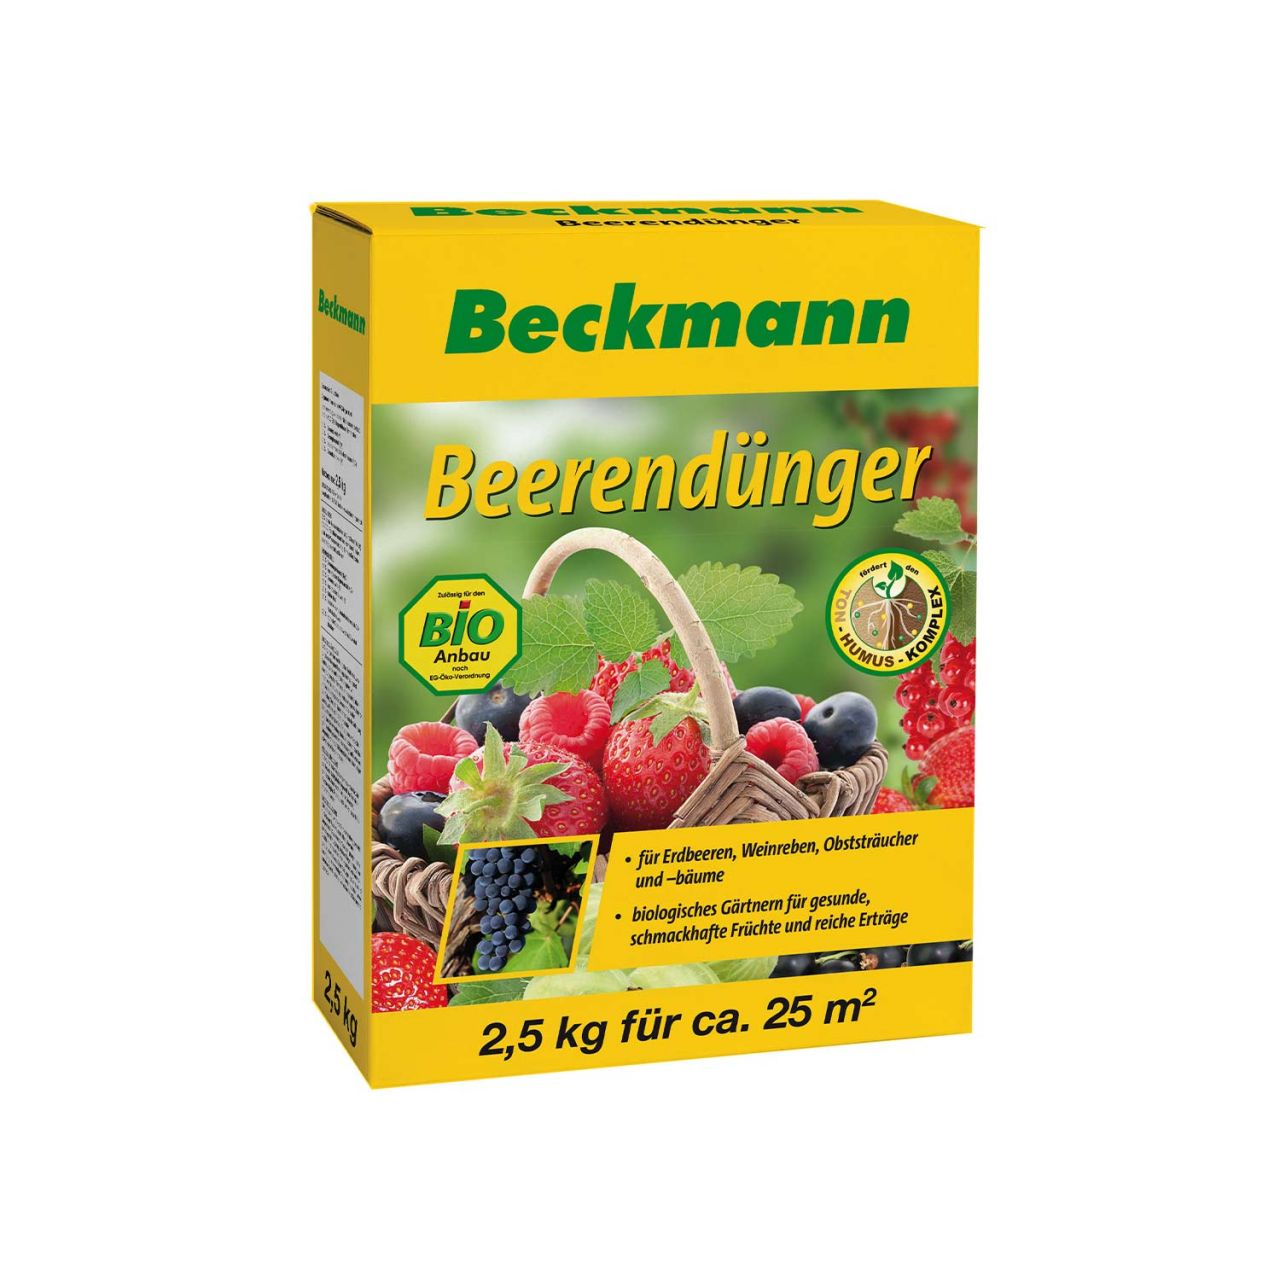 Beckmann Beerendünger - 2,5 kg von Beckmann